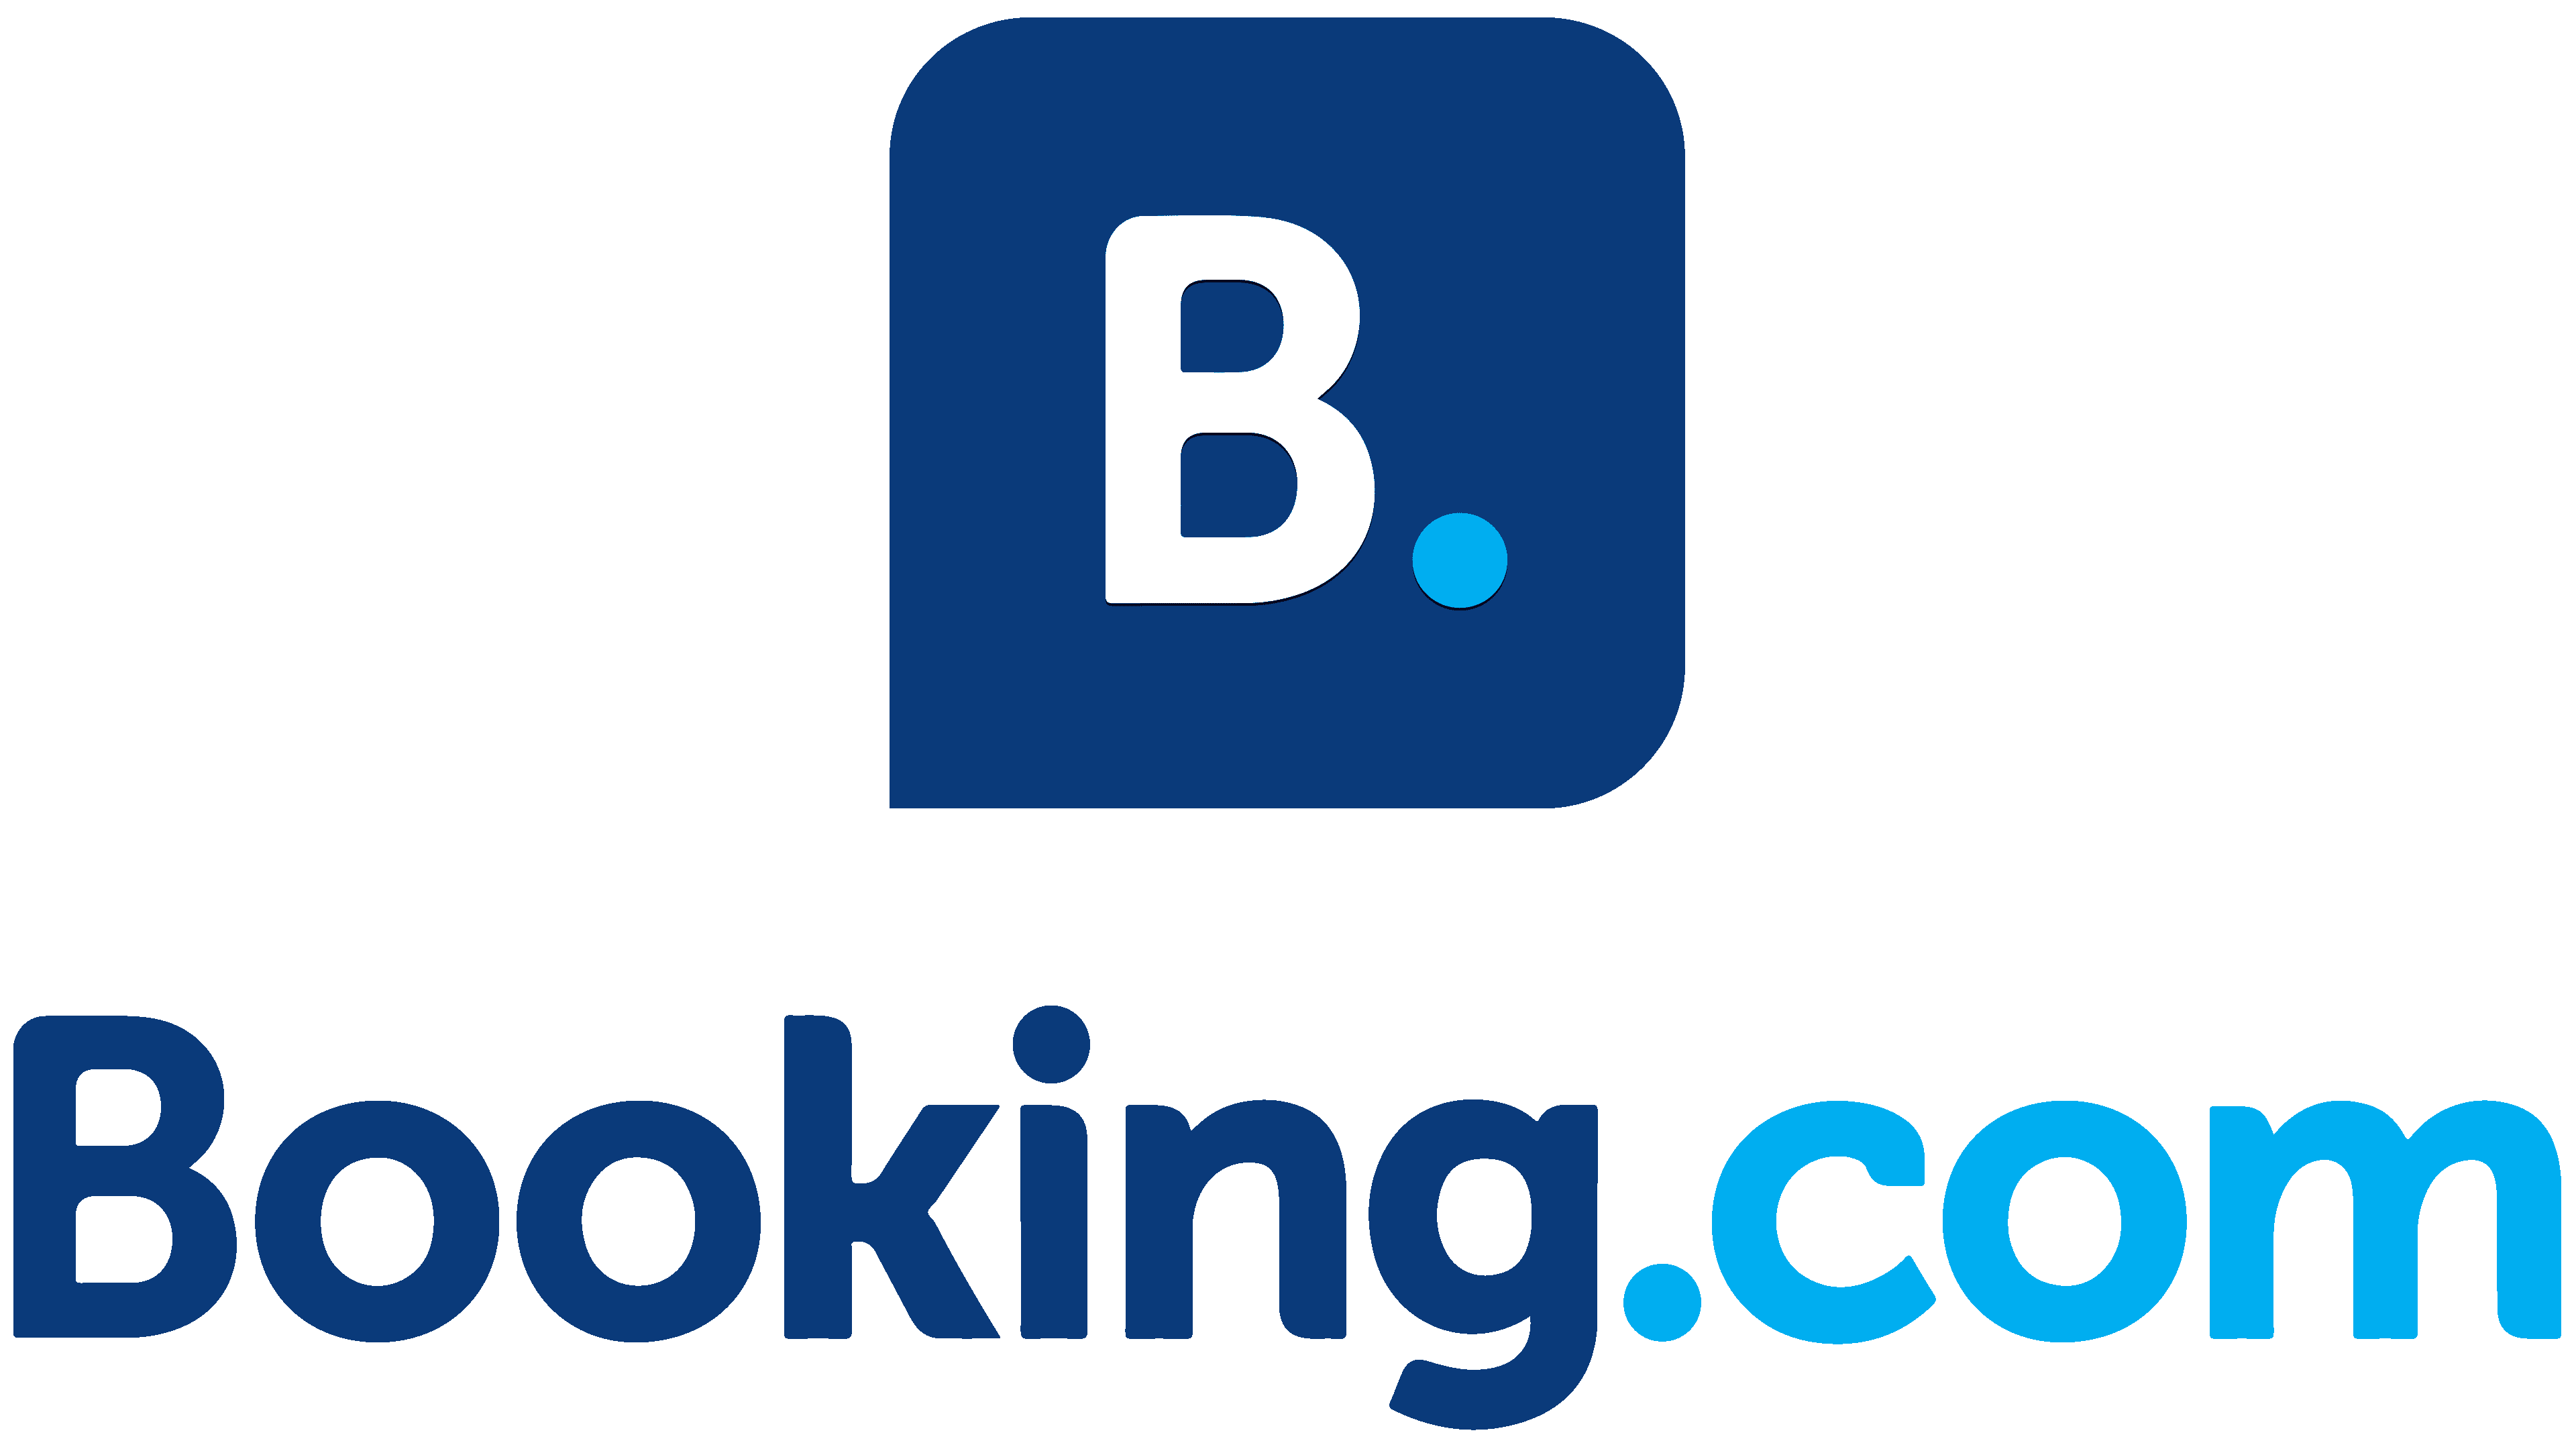 'booking.com' 'Booking deals'